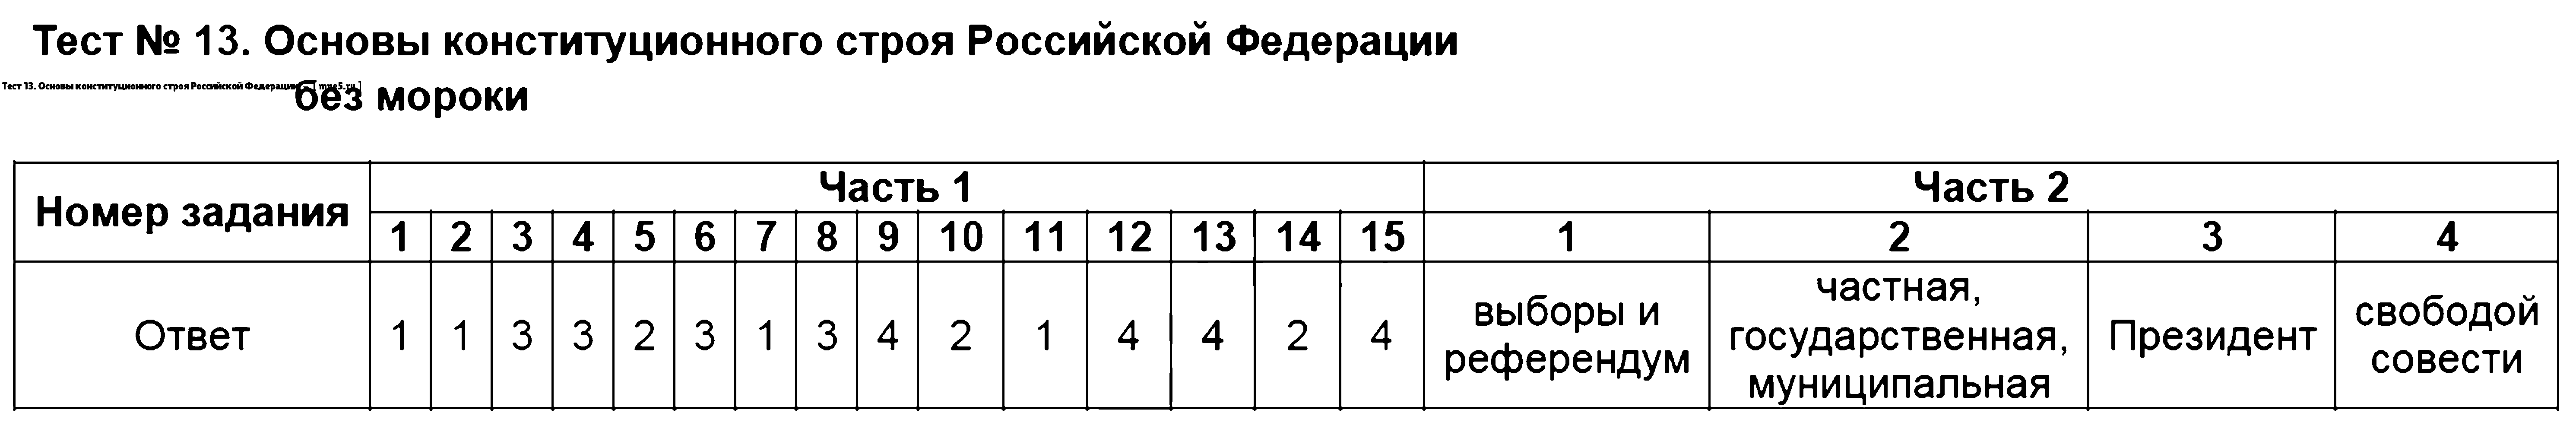 ГДЗ Обществознание 9 класс - Тест 13. Основы конституционного строя Российской Федерации